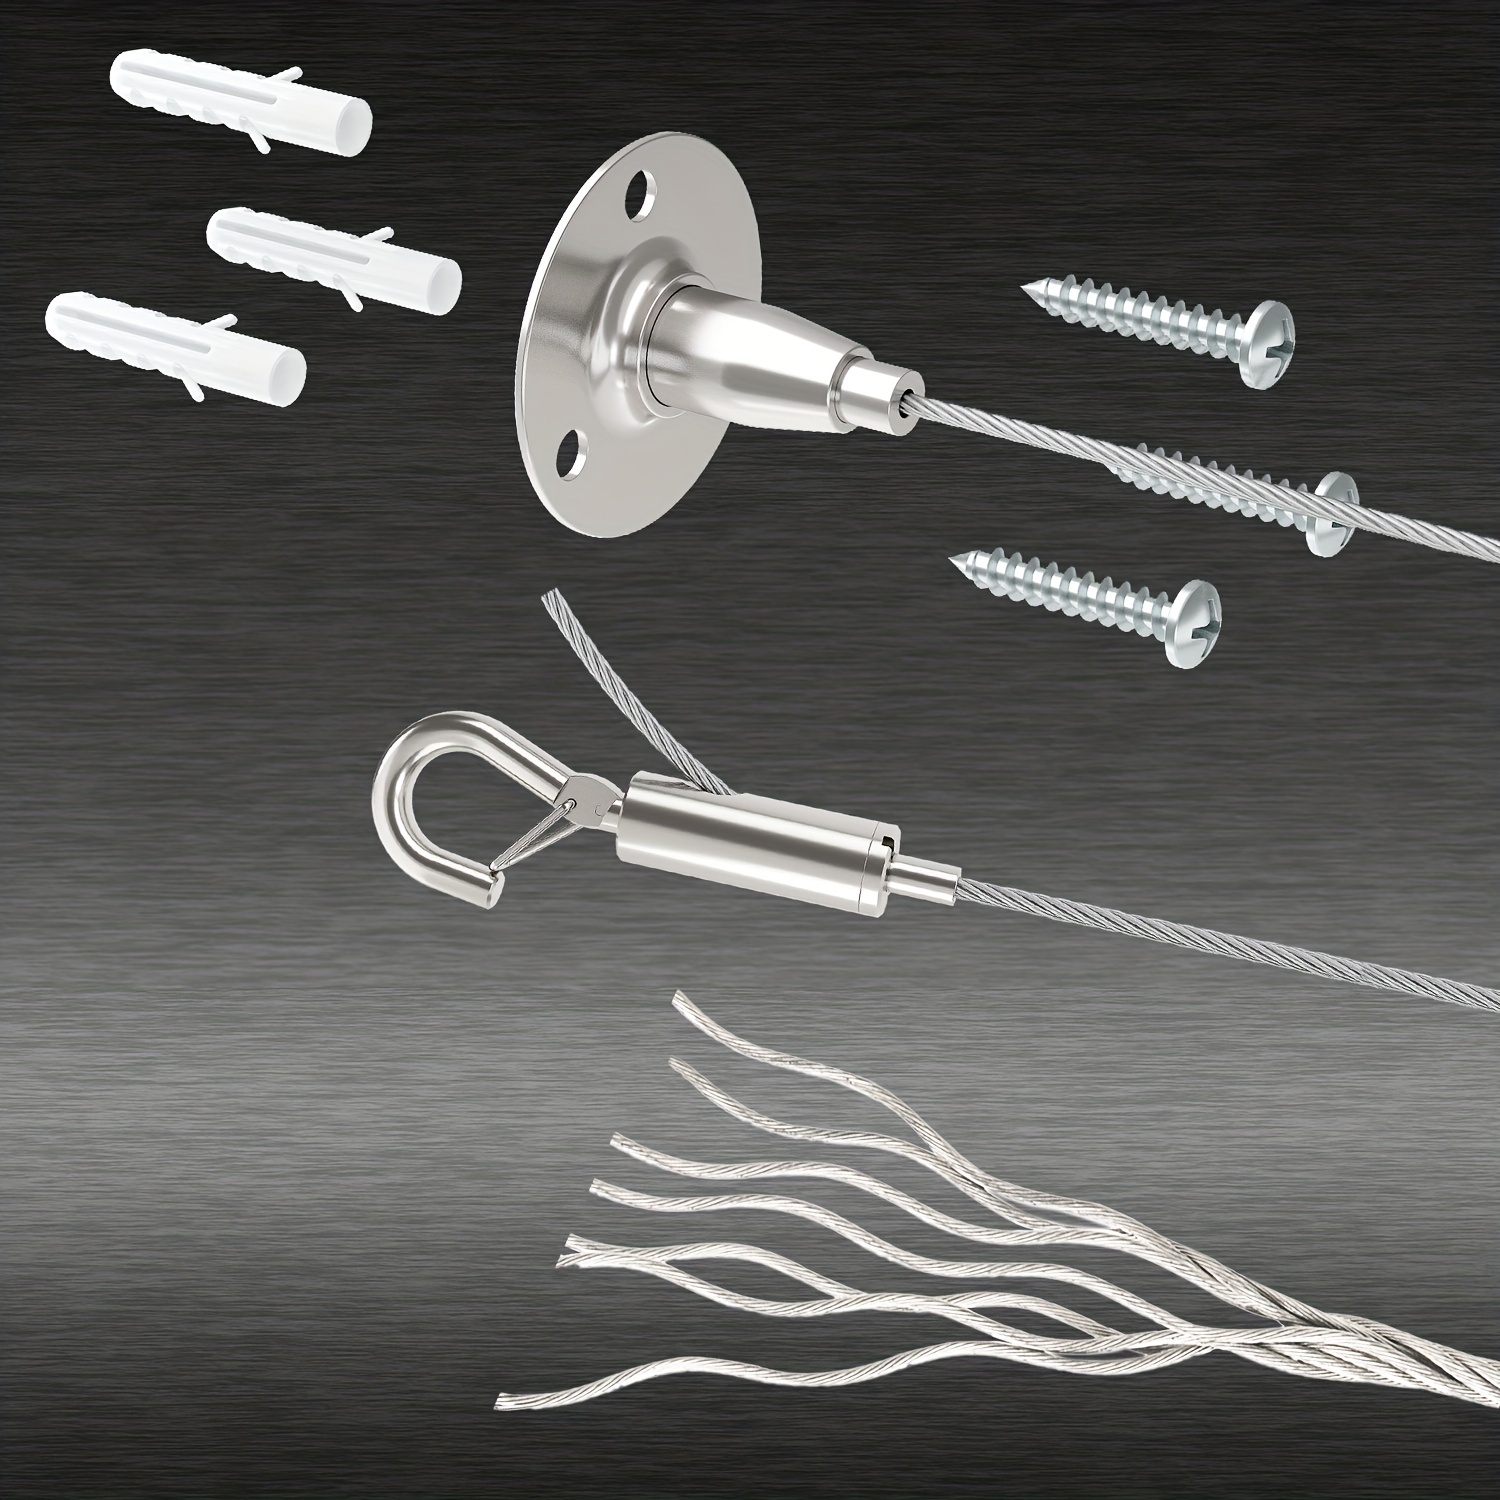 ZOLGINAH Kit para colgar cuerdas de acero inoxidable de 15 m, kit de cuerda  de alambre